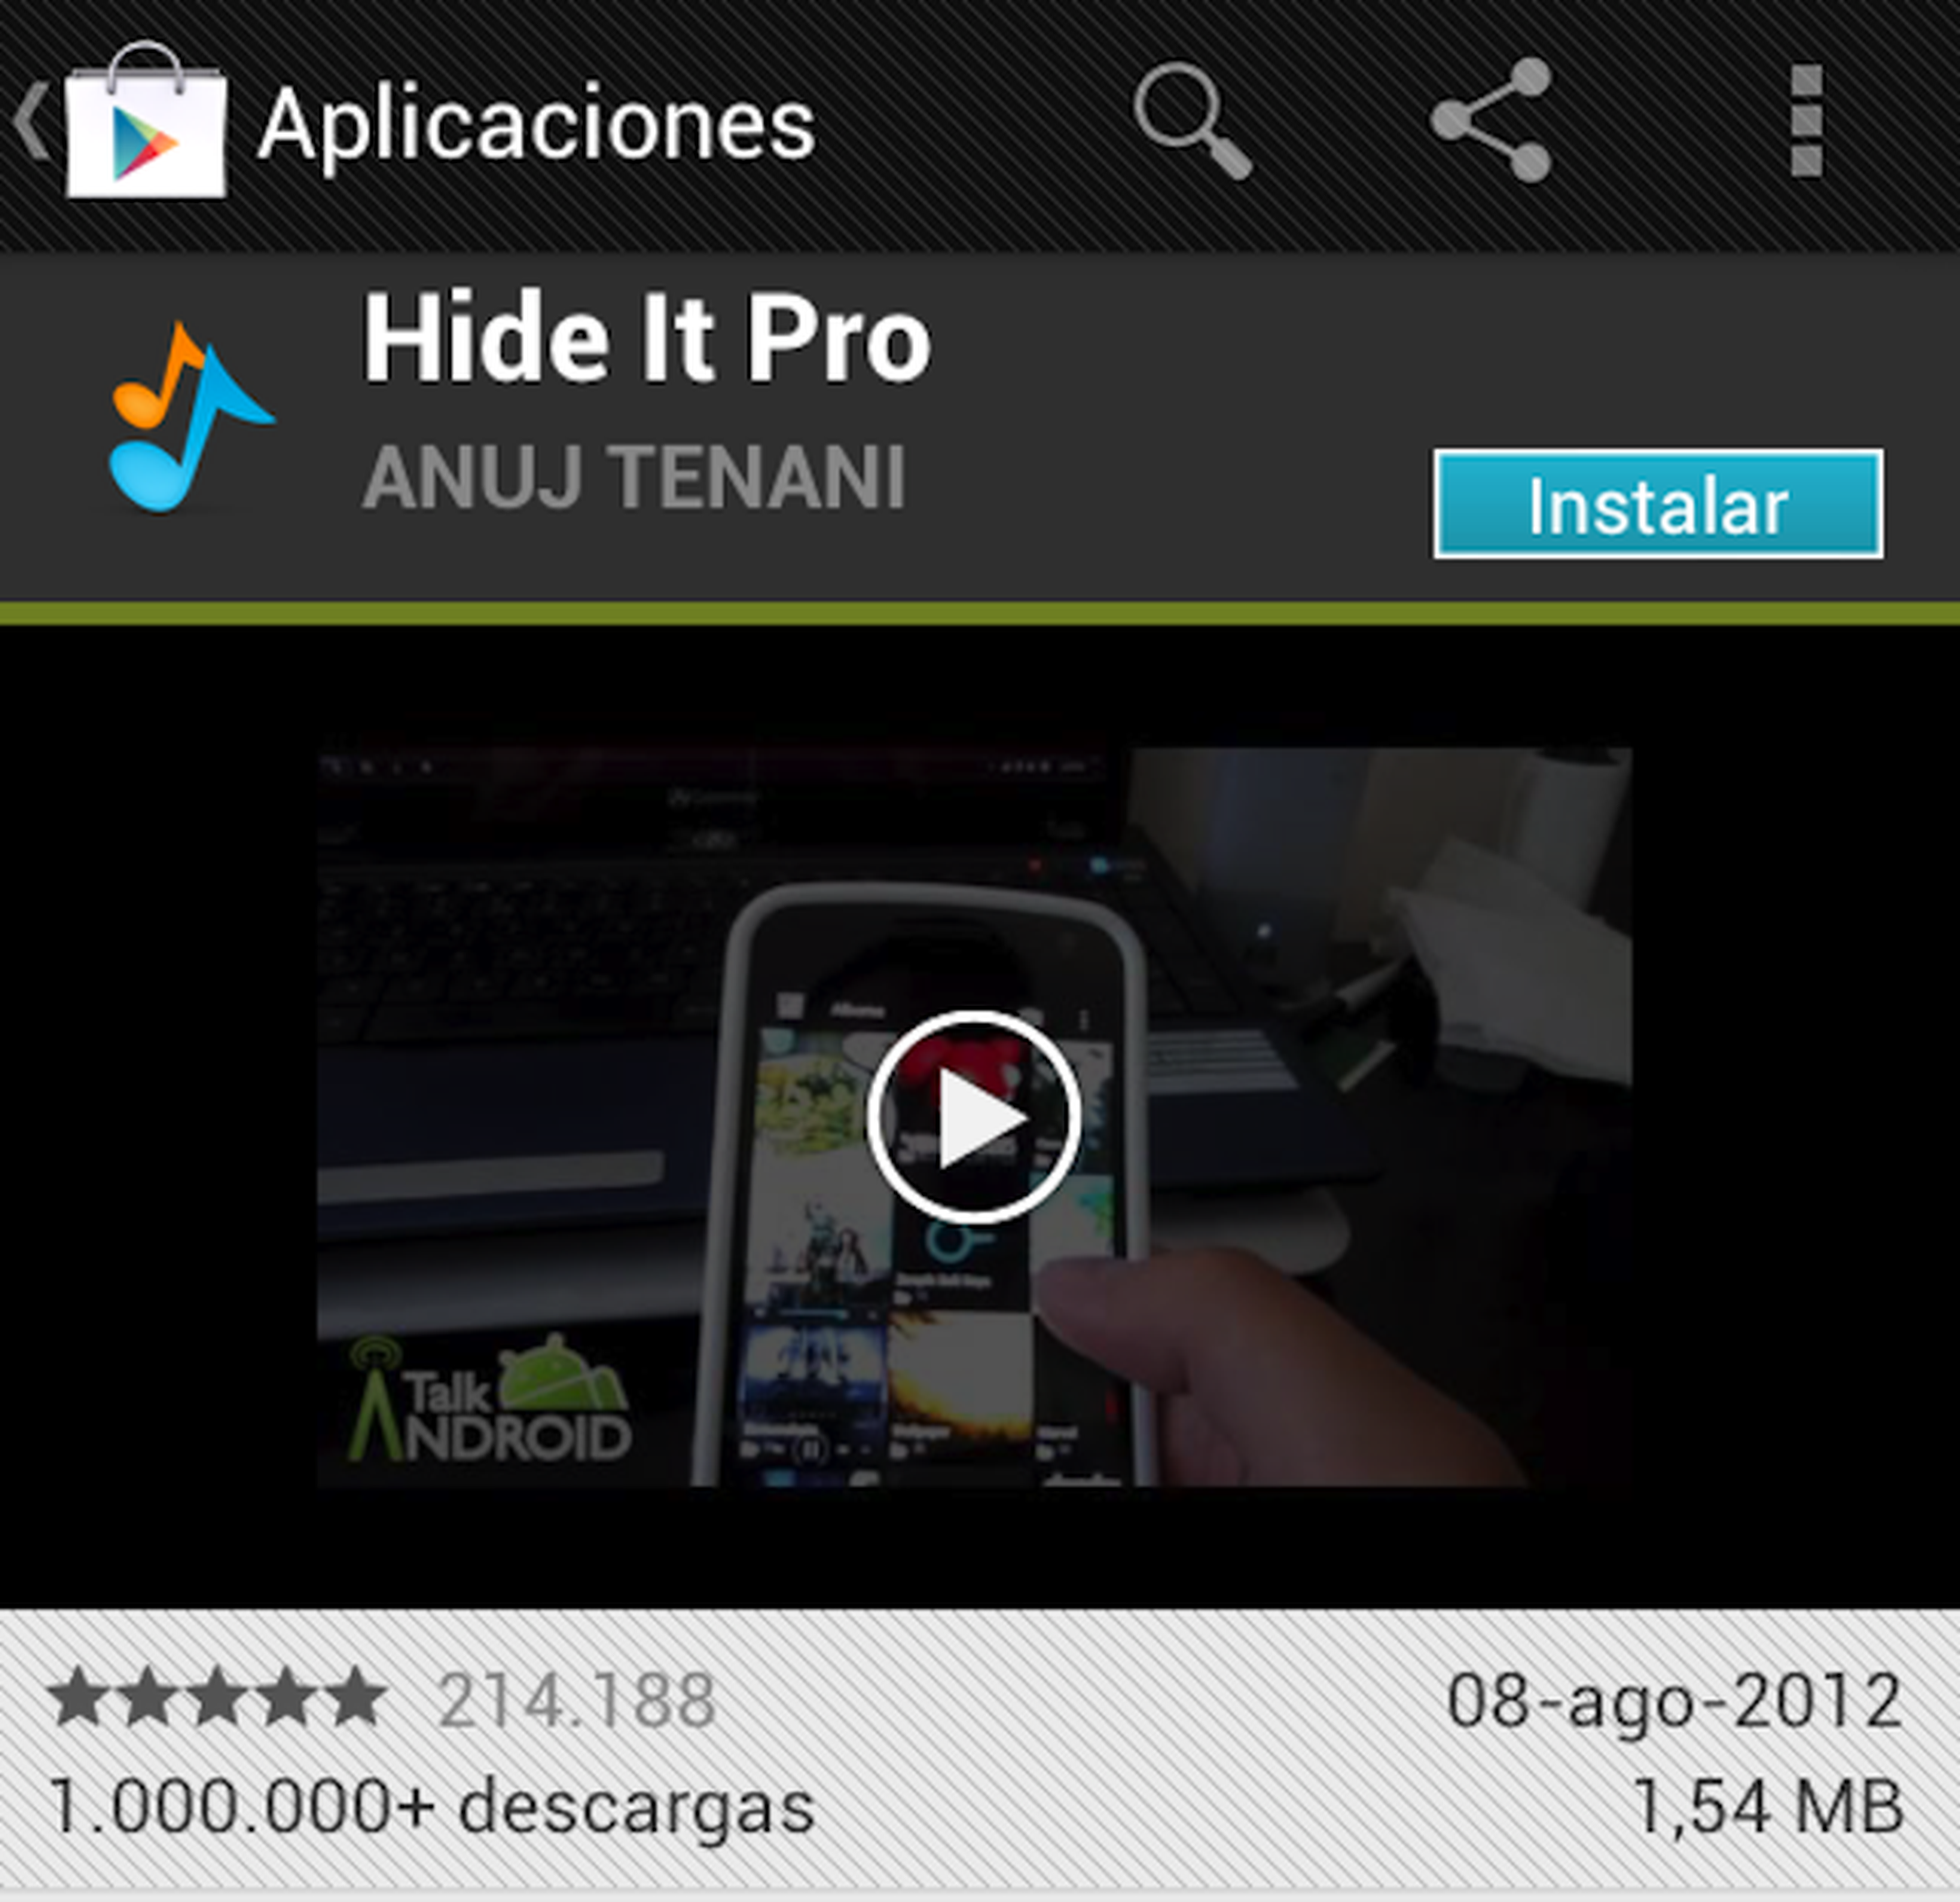 Descarga Hide It Pro de Google Play